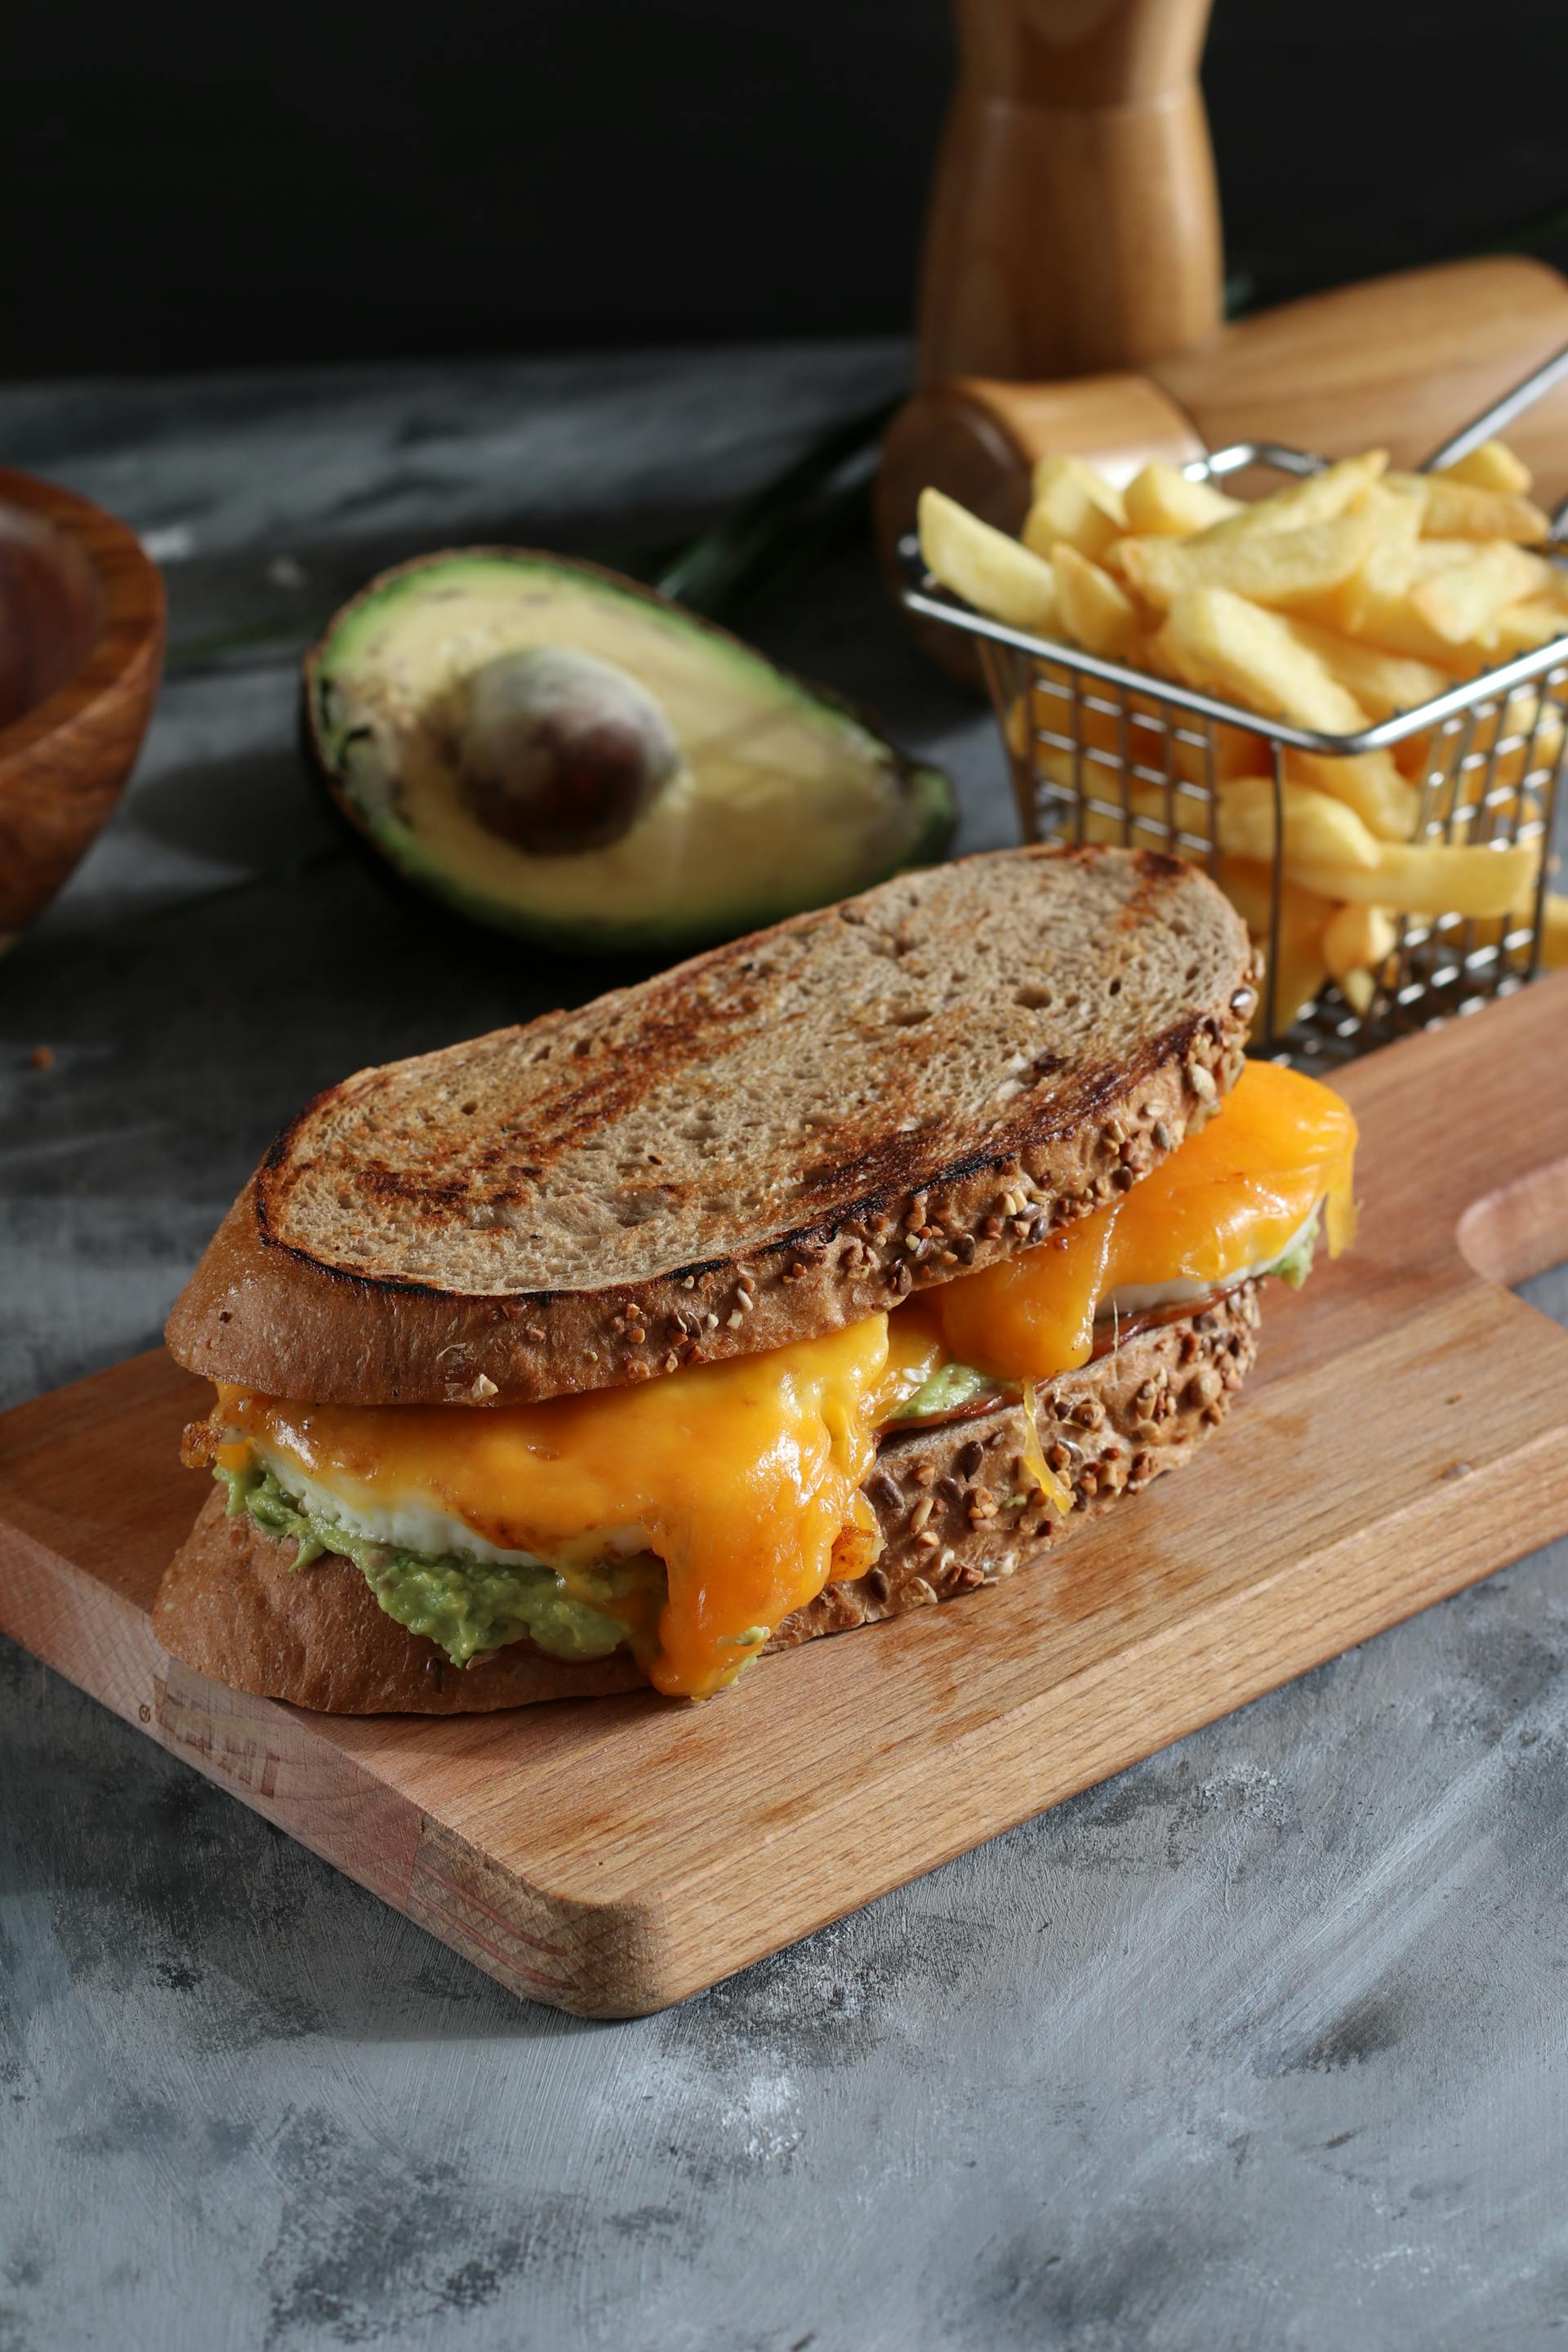 Un sandwich au fromage grillé | Source : Pexels